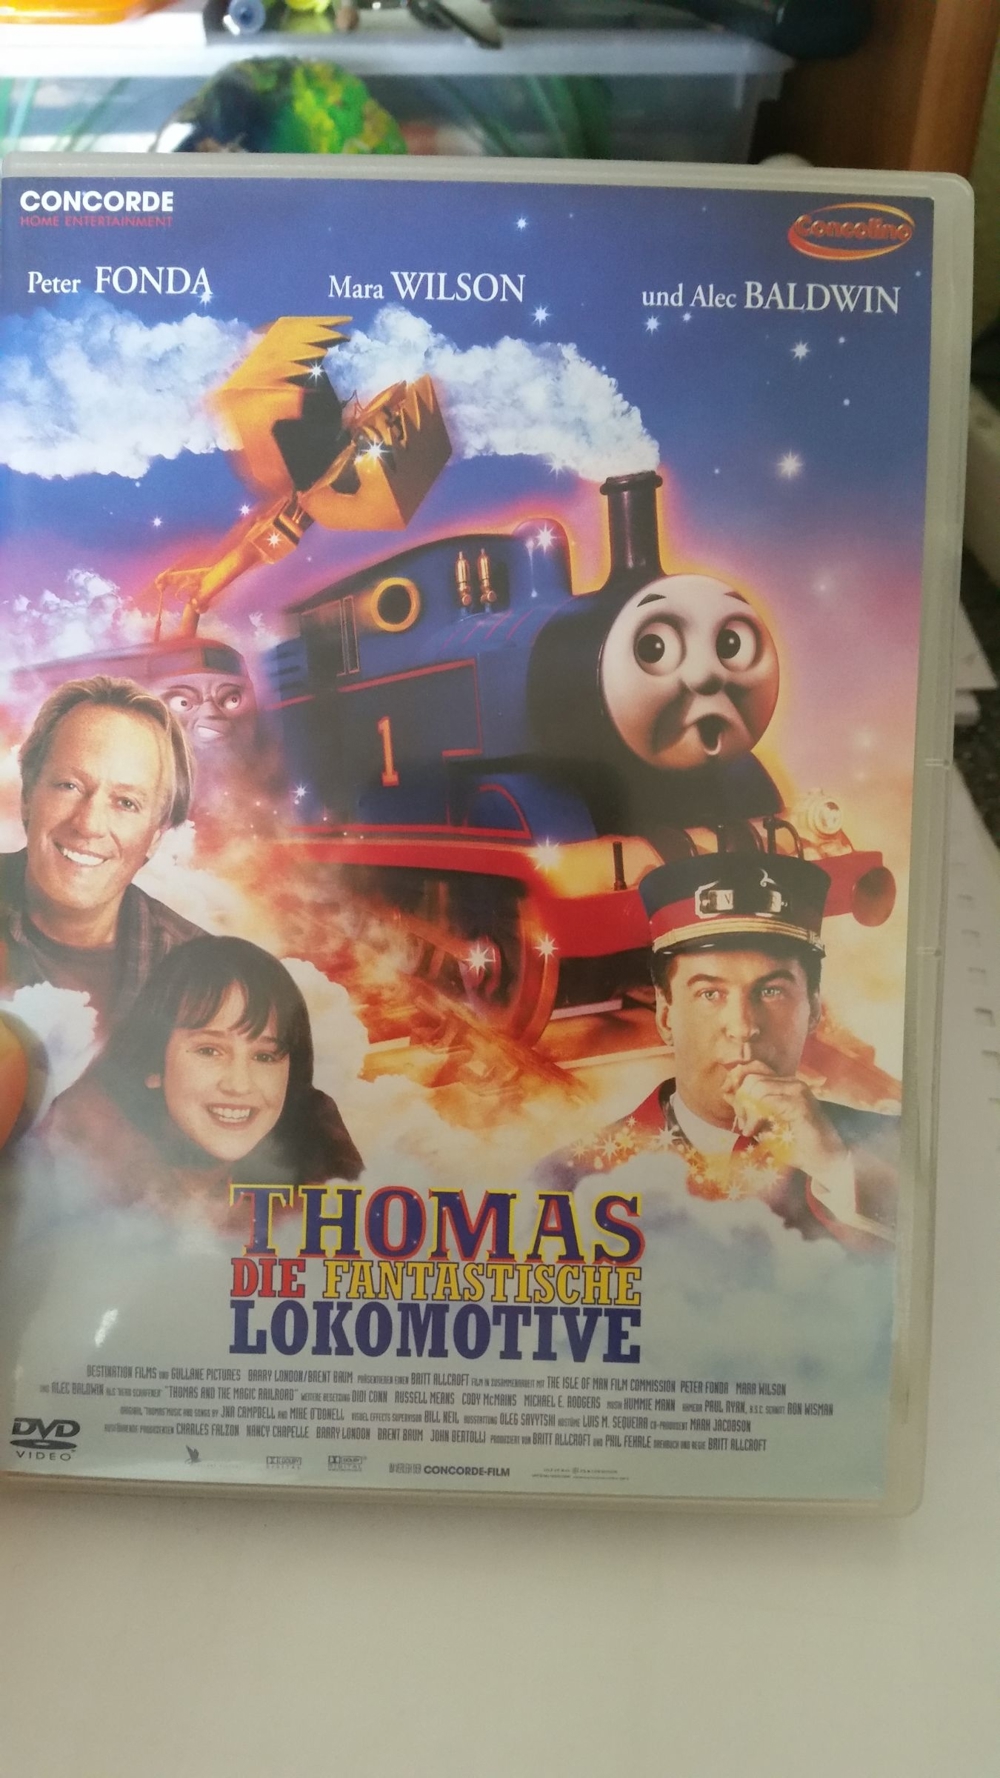 DVD: Thomas, die fantastische Lokomotive